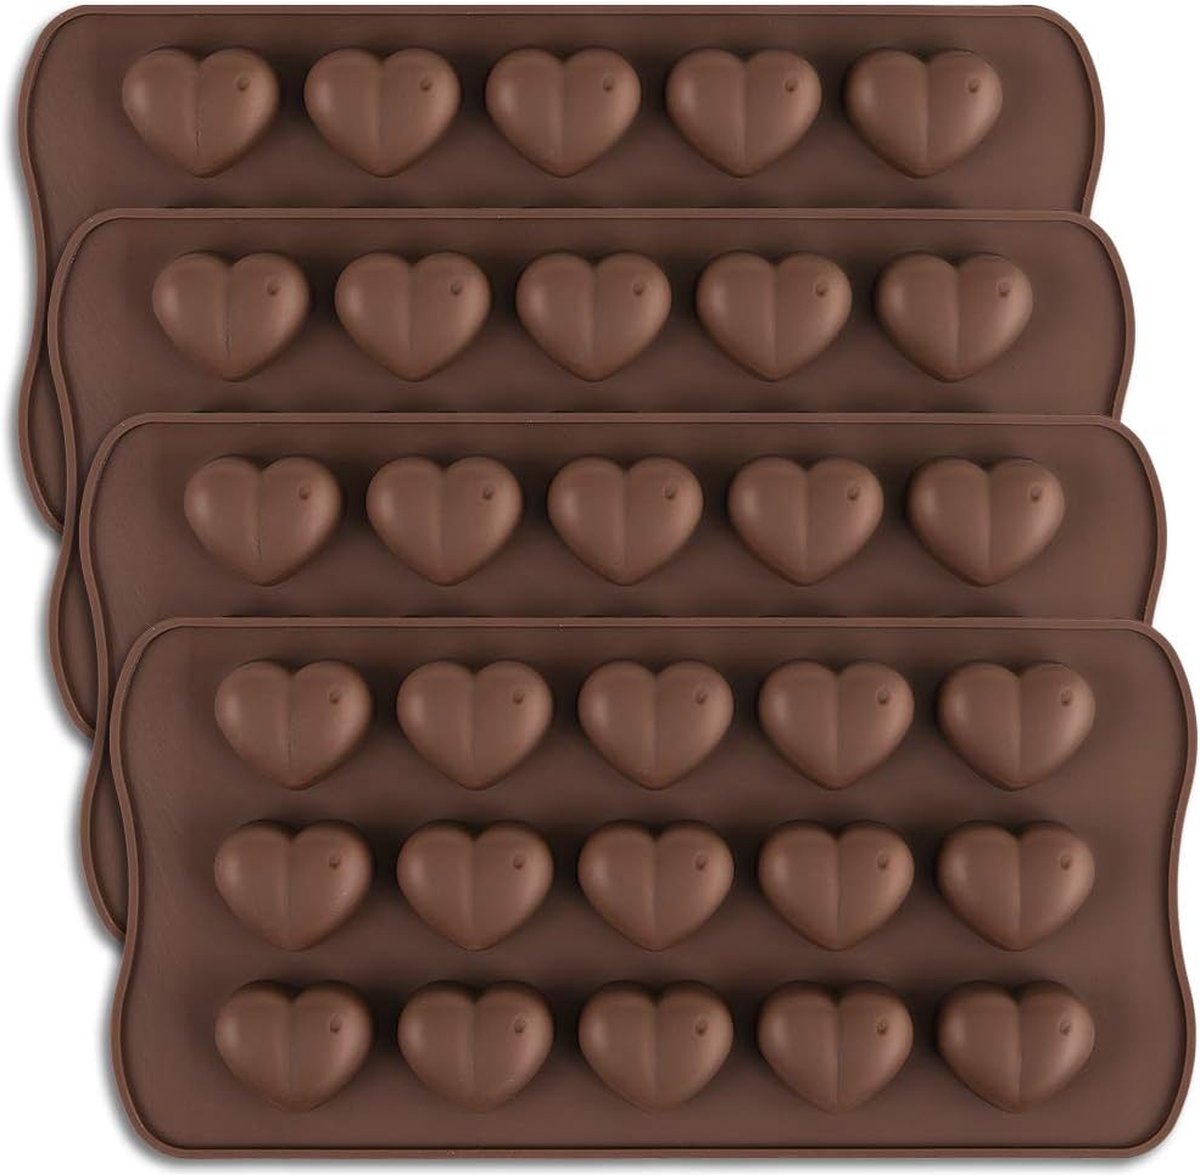 Chocoladevorm met 15 bakjes, hartvorm, siliconen vorm, voor Valentijnsdag, hart, chocolade, vorm voor wijngom en snoep